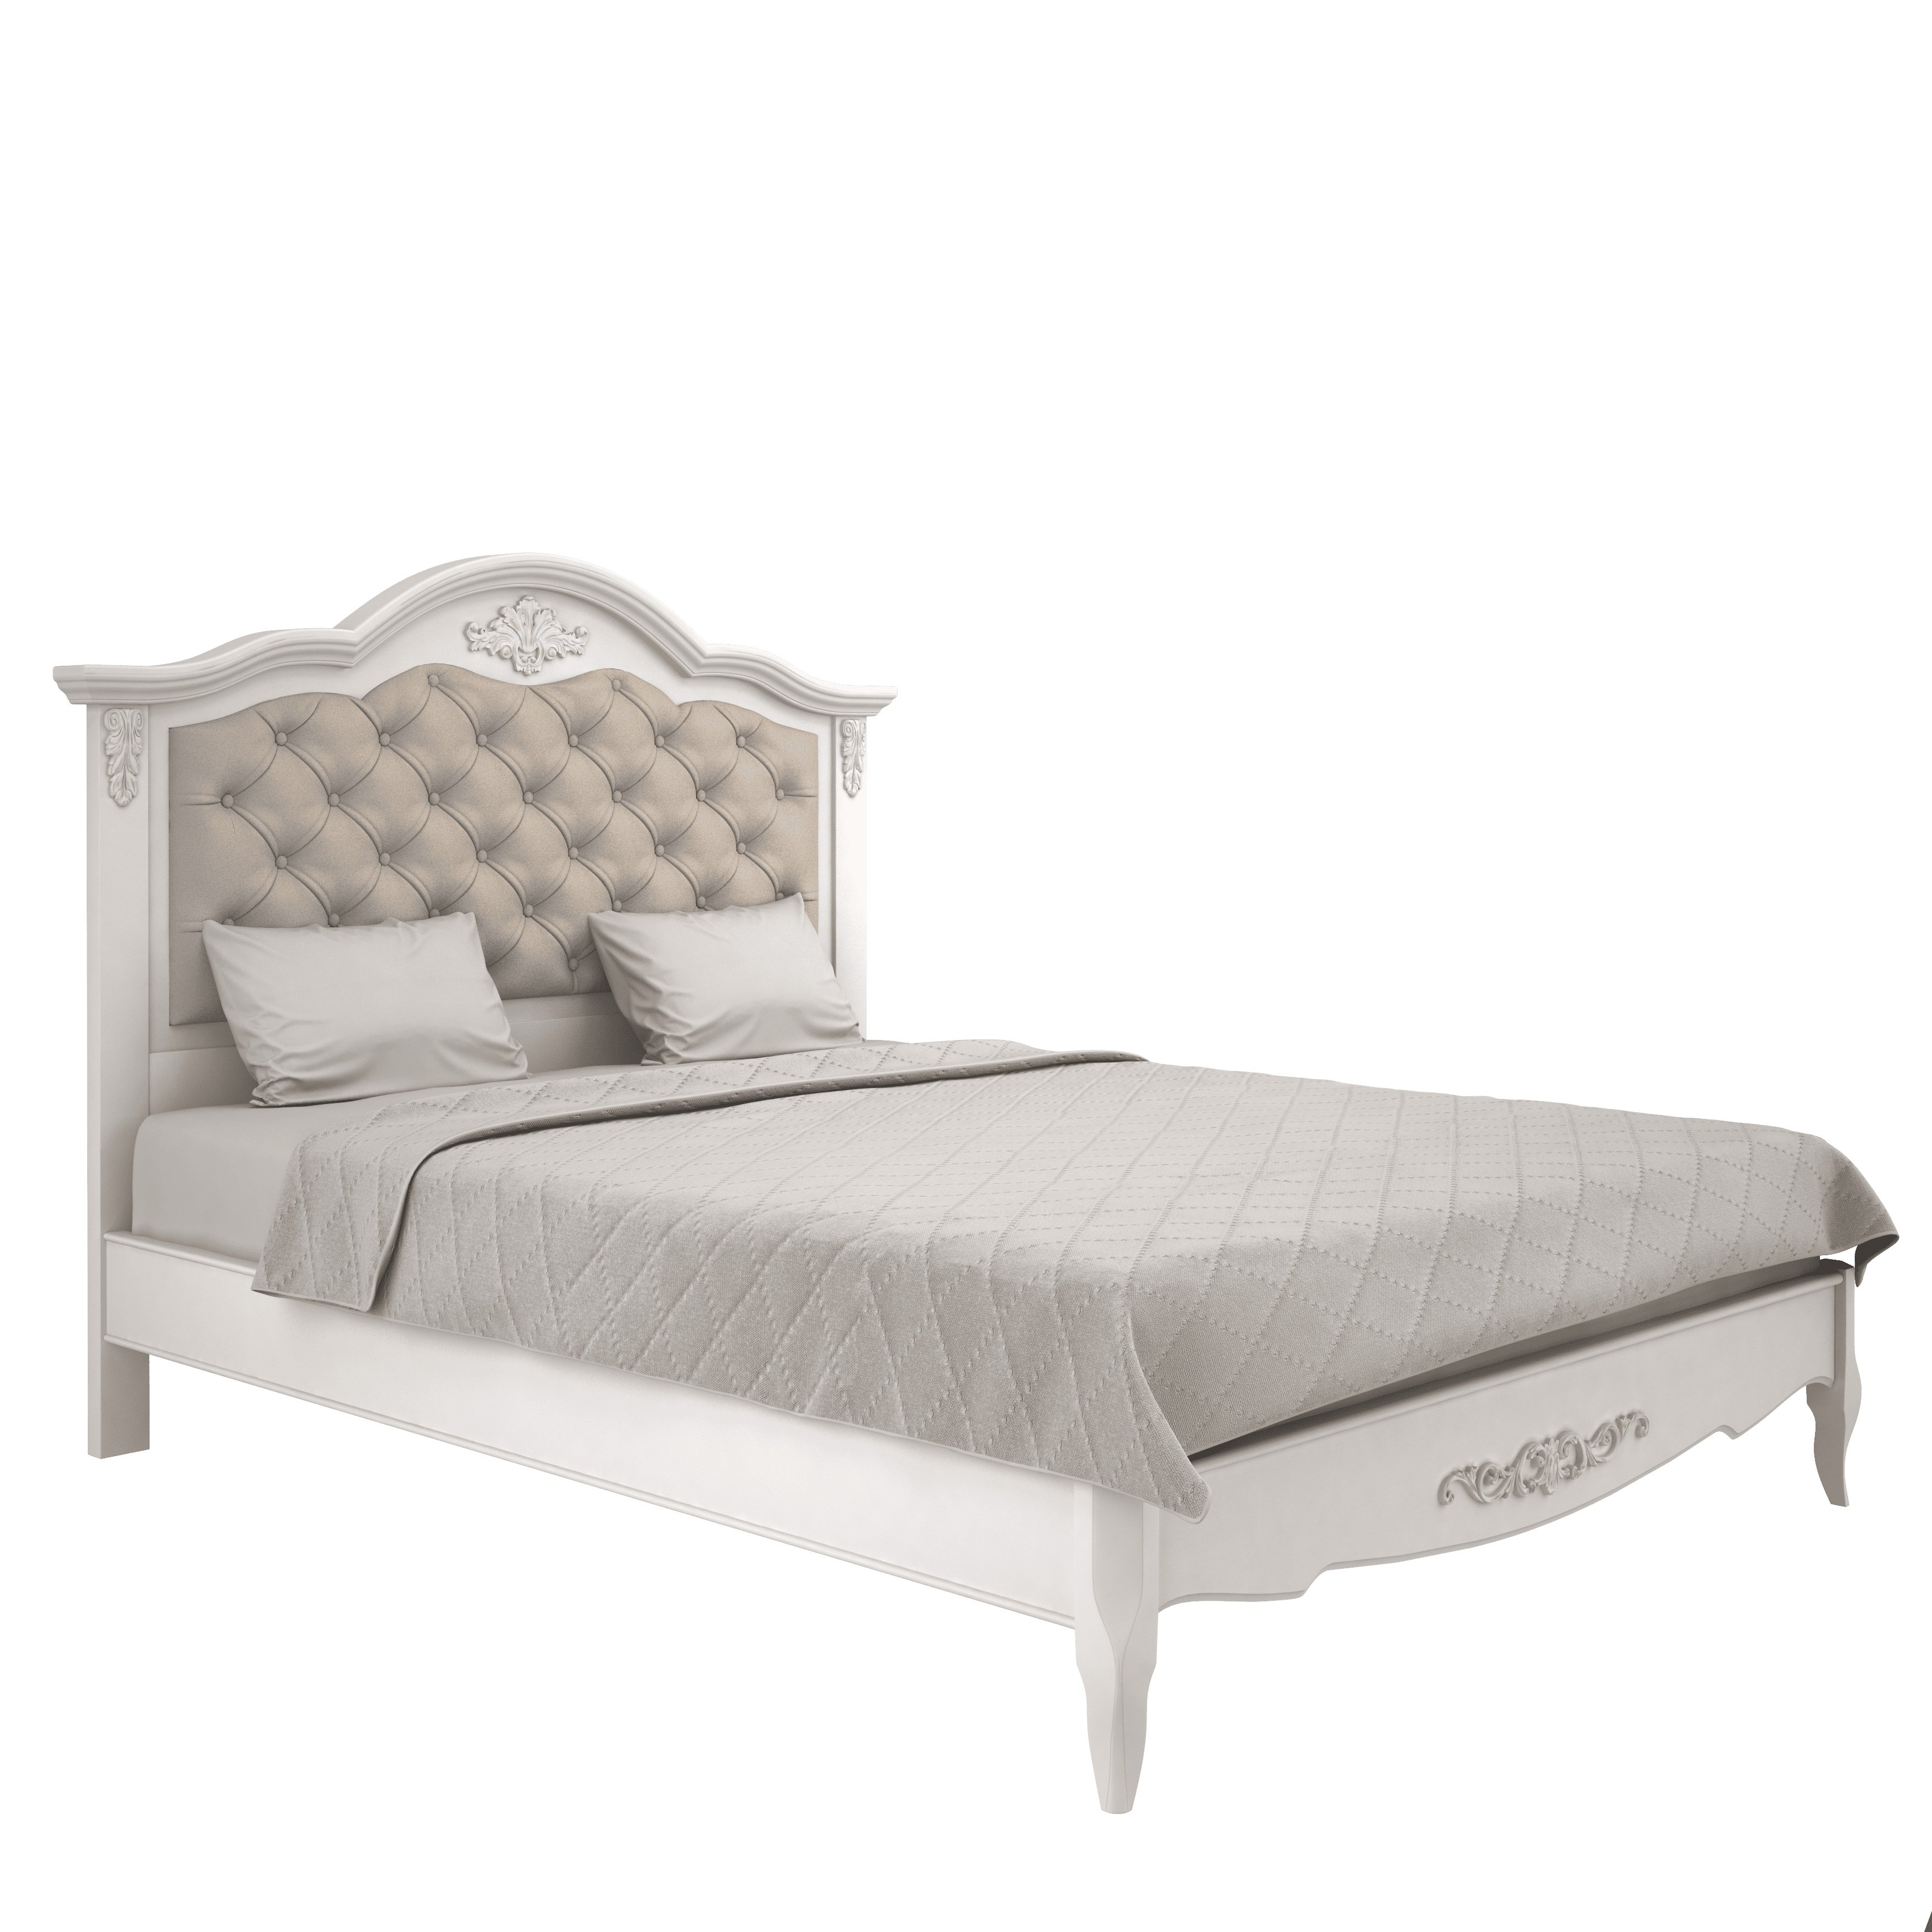 Кровать Aletan Provence, двуспальная, 160x200 см, цвет: слоновая кость (B216)B216